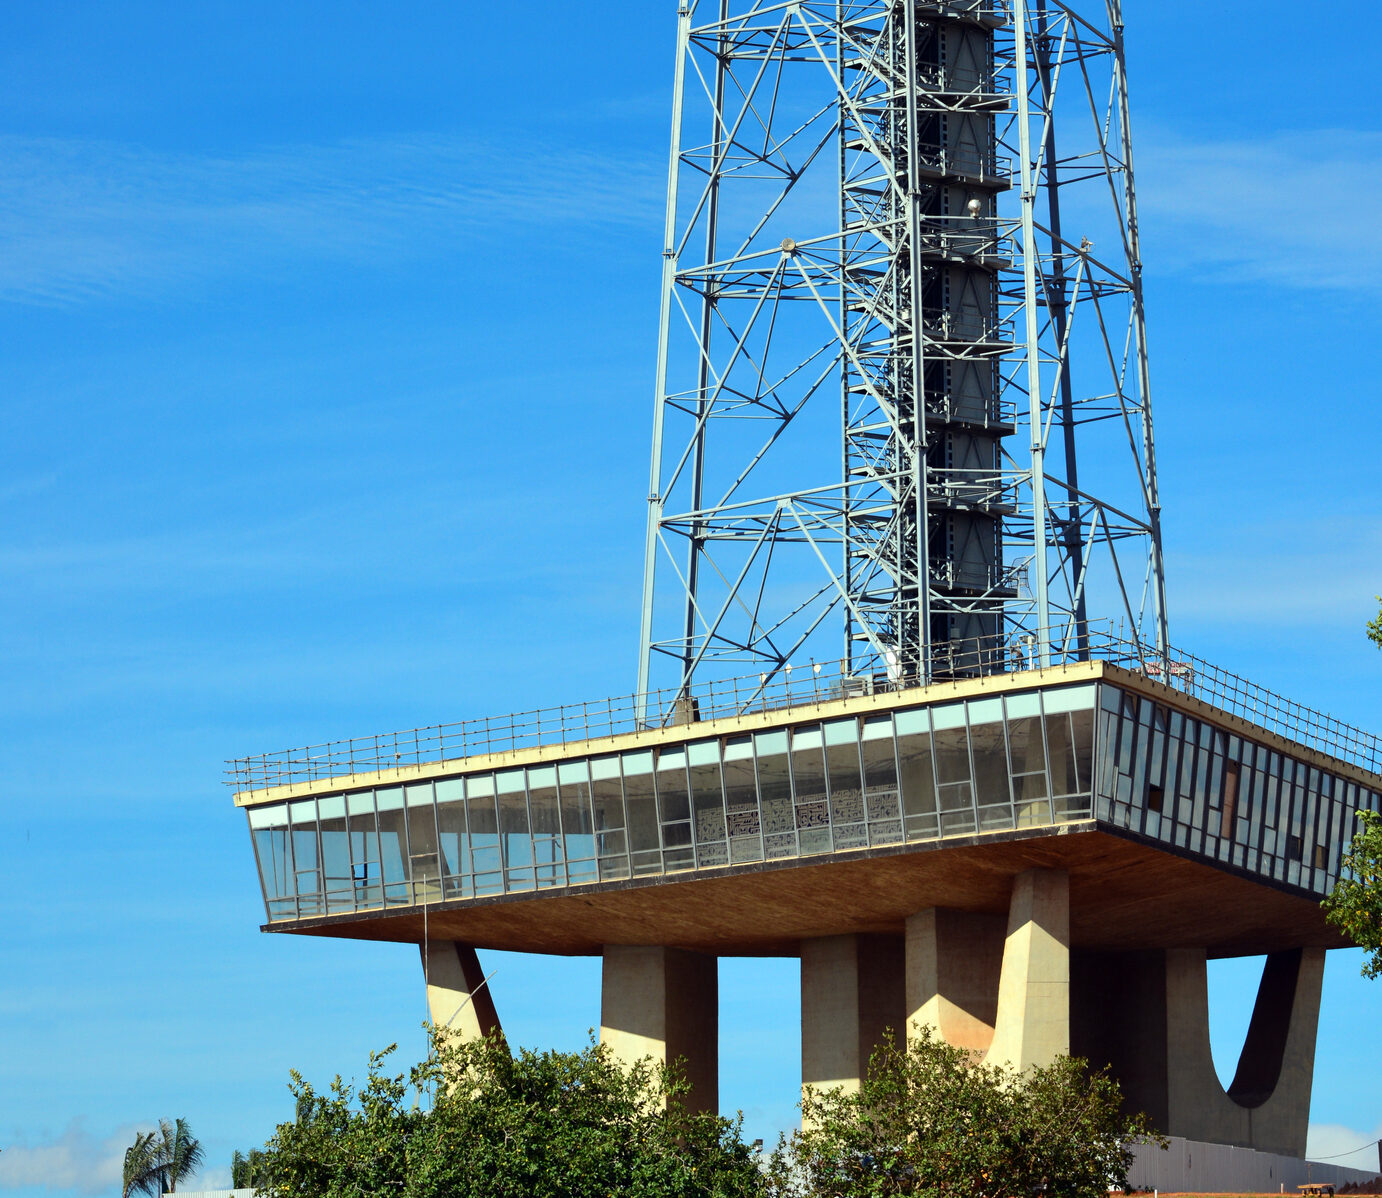 A Torre de TV de Brasília, um dos principais pontos turísticos da cidade, oferece uma vista panorâmica deslumbrante da capital brasileira